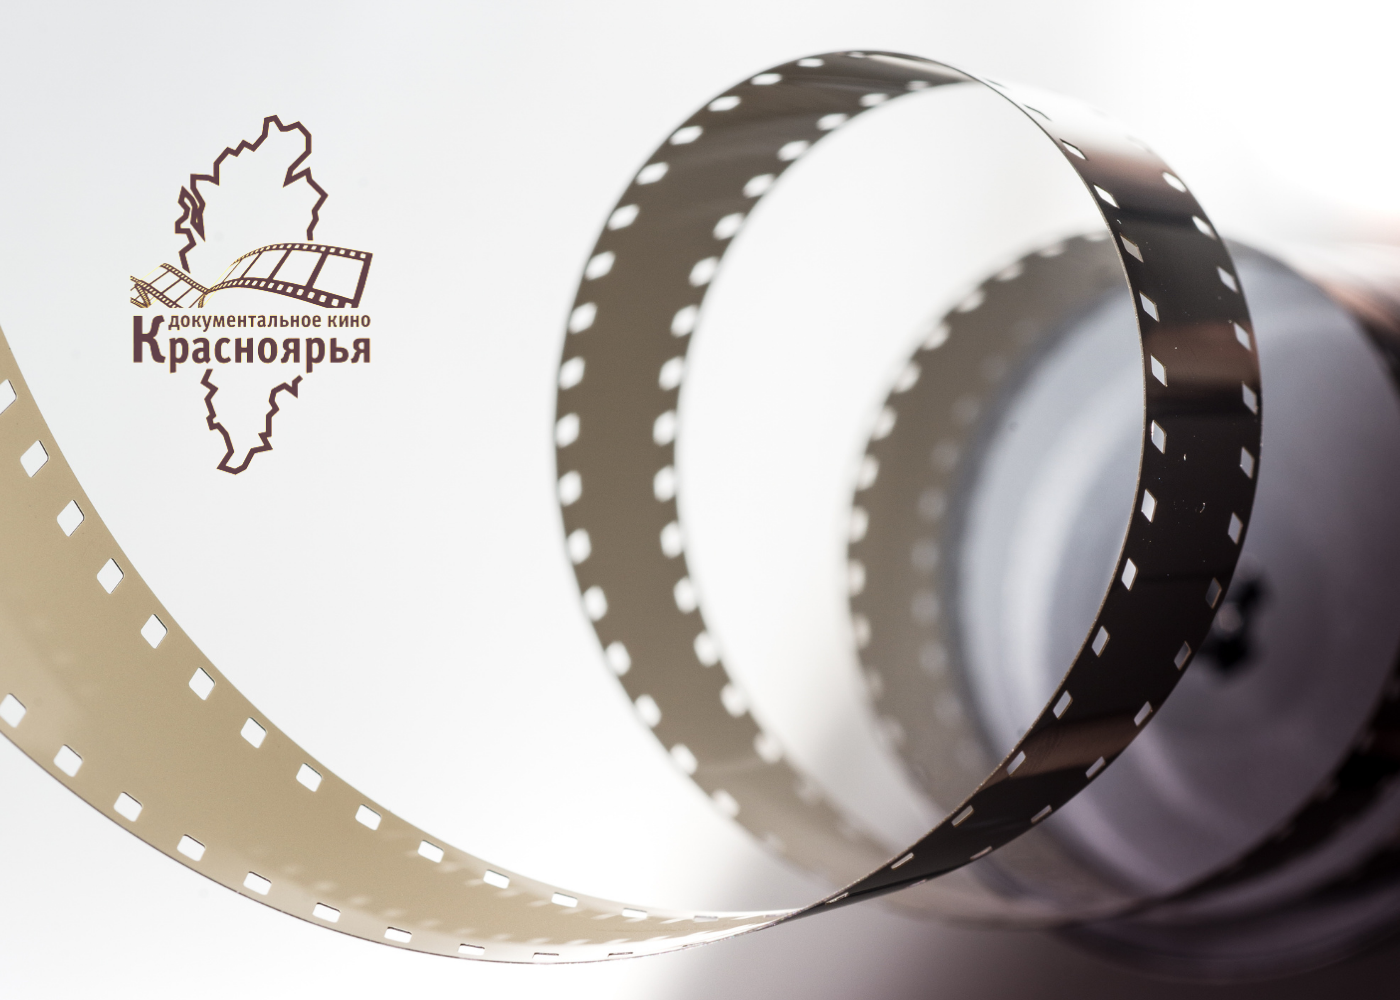 В Красноярске в апреле состоятся премьеры фильмов-победителей грантовой программы «Документальное кино Красноярья»